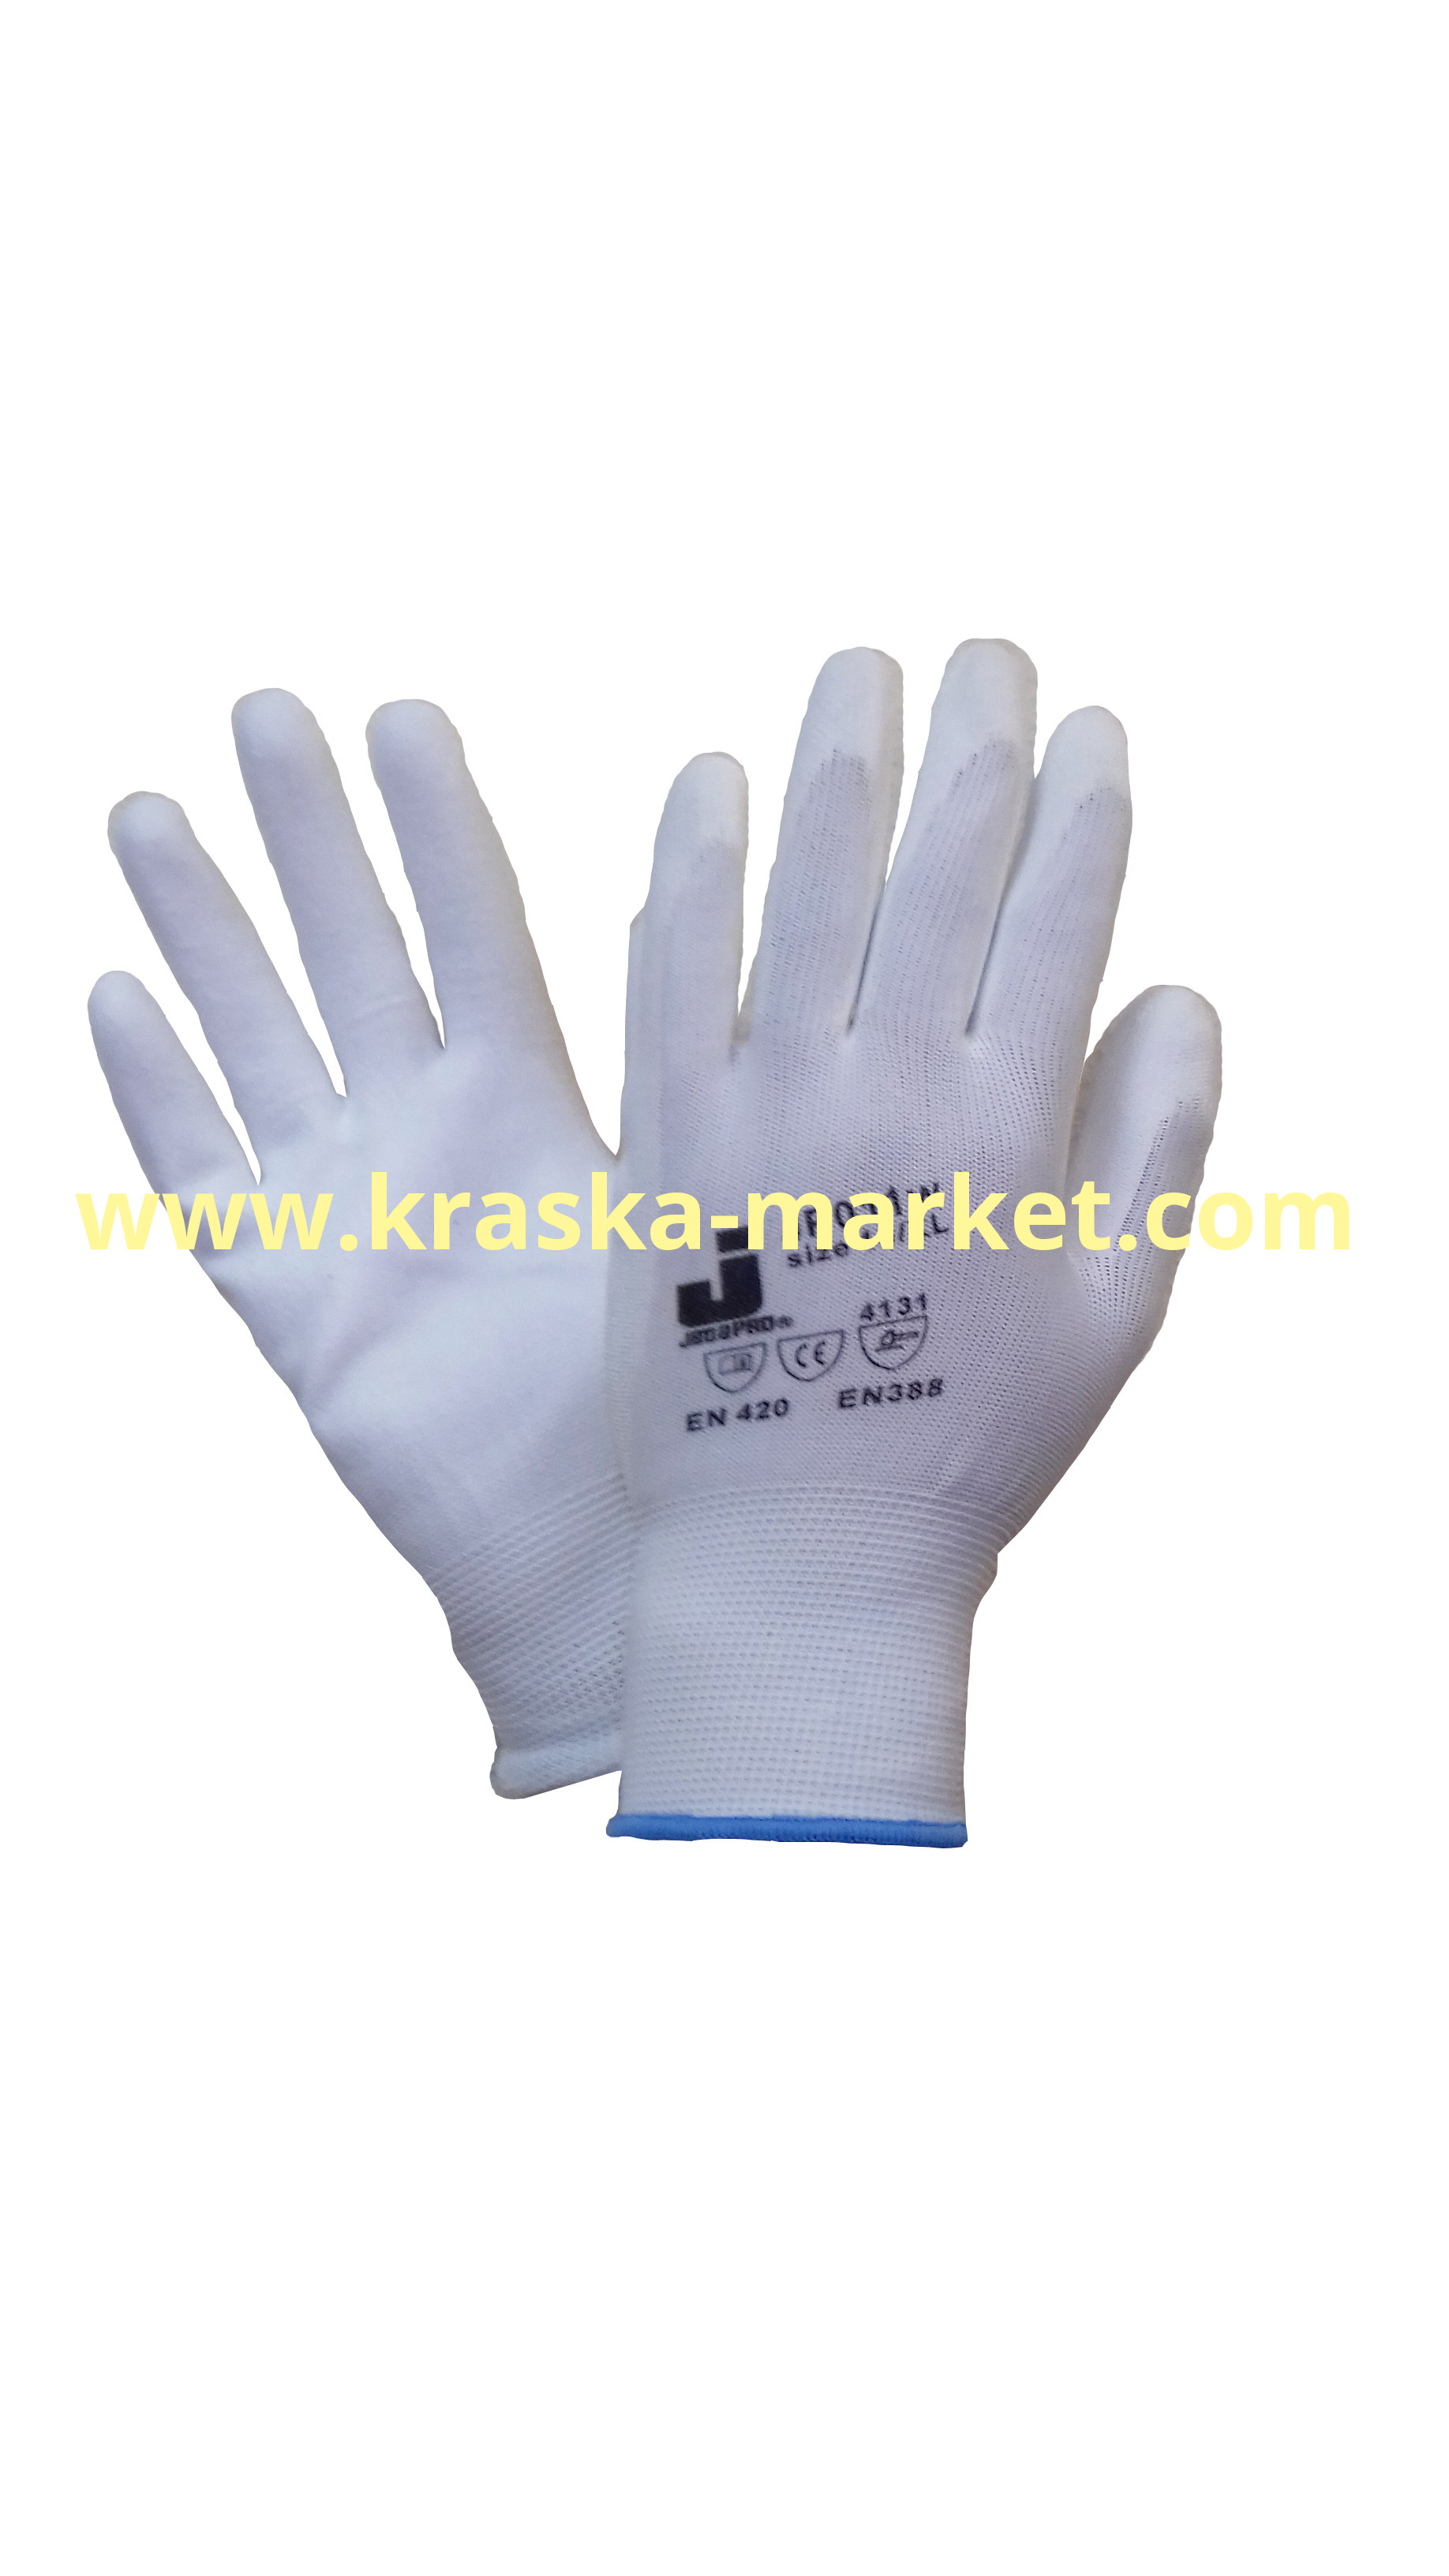 Защитные перчатки из полиэфирной пряжи c полиуретановым покрытием. Цвет: белый. Размер: L. Торговая марка: JetaPro.